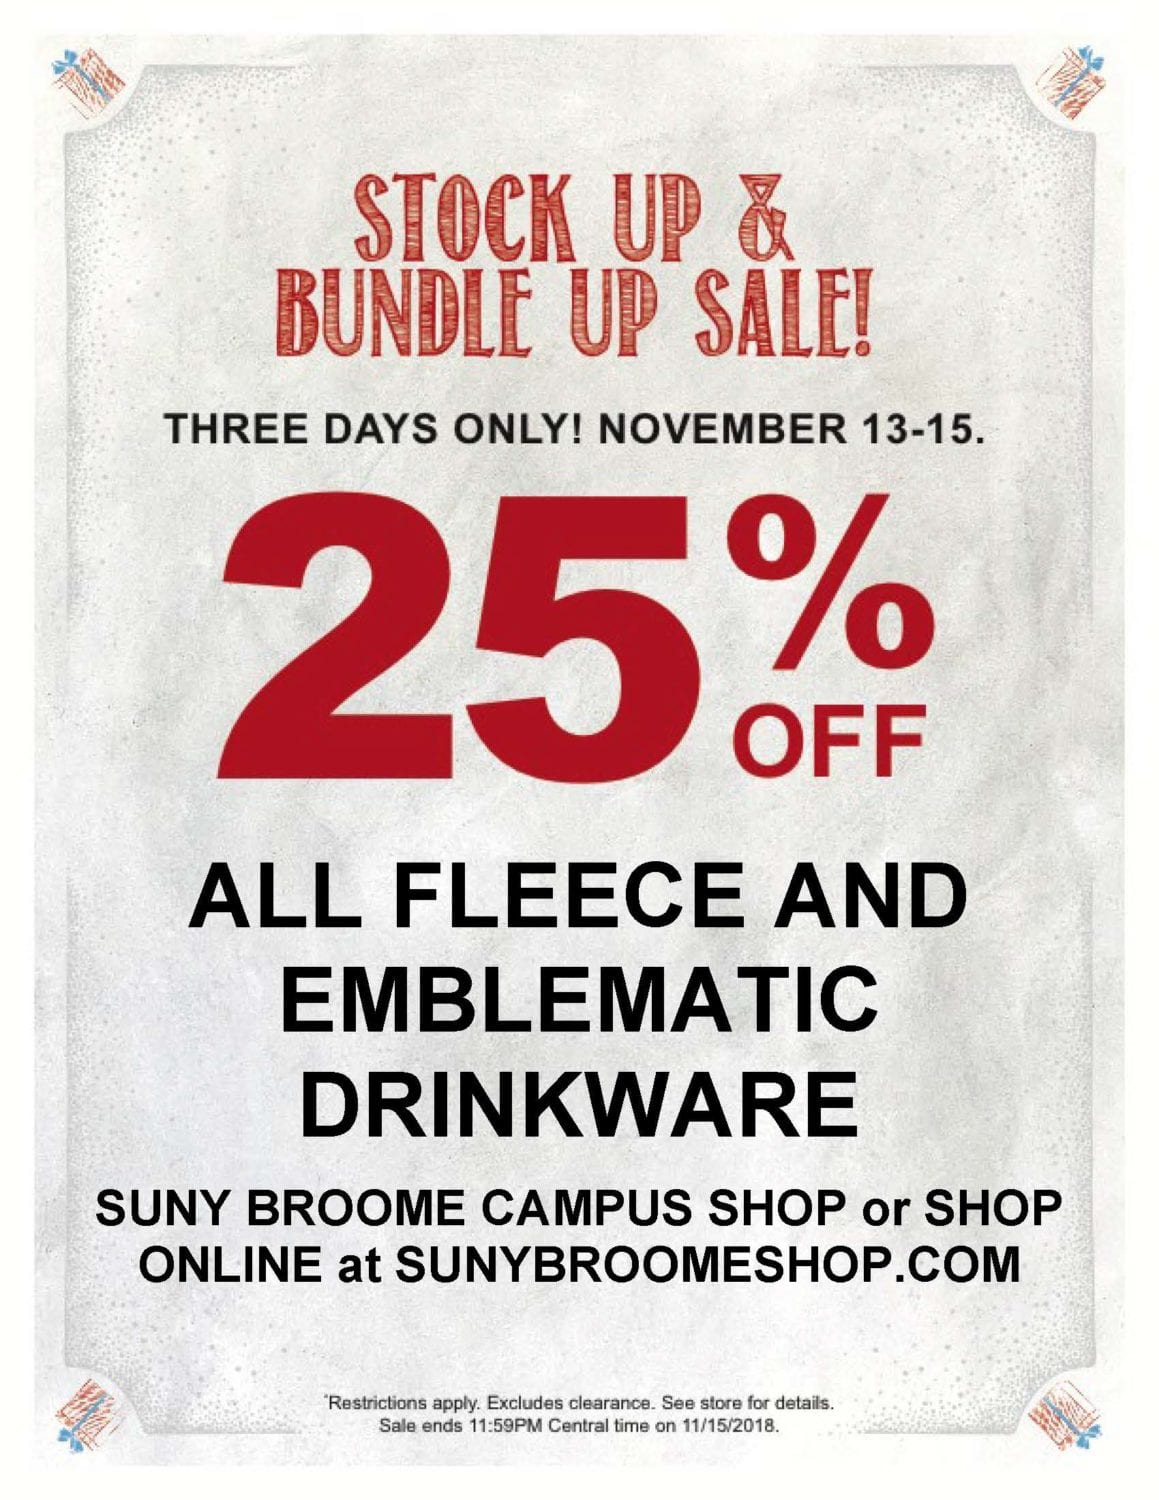 SUNY Broome Campus Shop 3-Day Sale Nov. 13-15